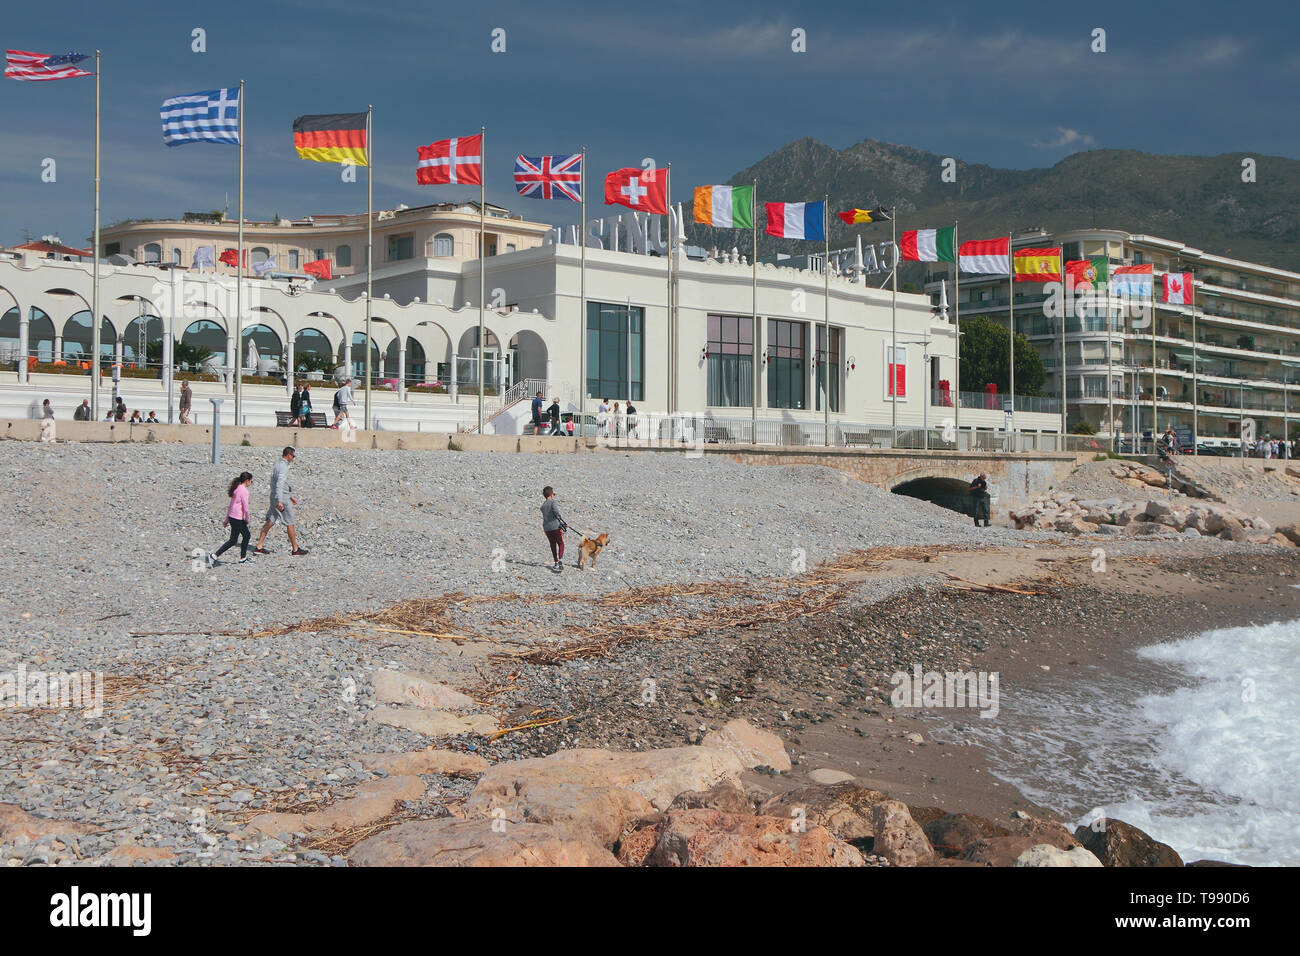 Menton, Nizza, Frankreich - pr 20, 2019: Strand, Damm und Flaggenmast achtern mit Flaggen verschiedener Mitgliedstaaten Stockfoto